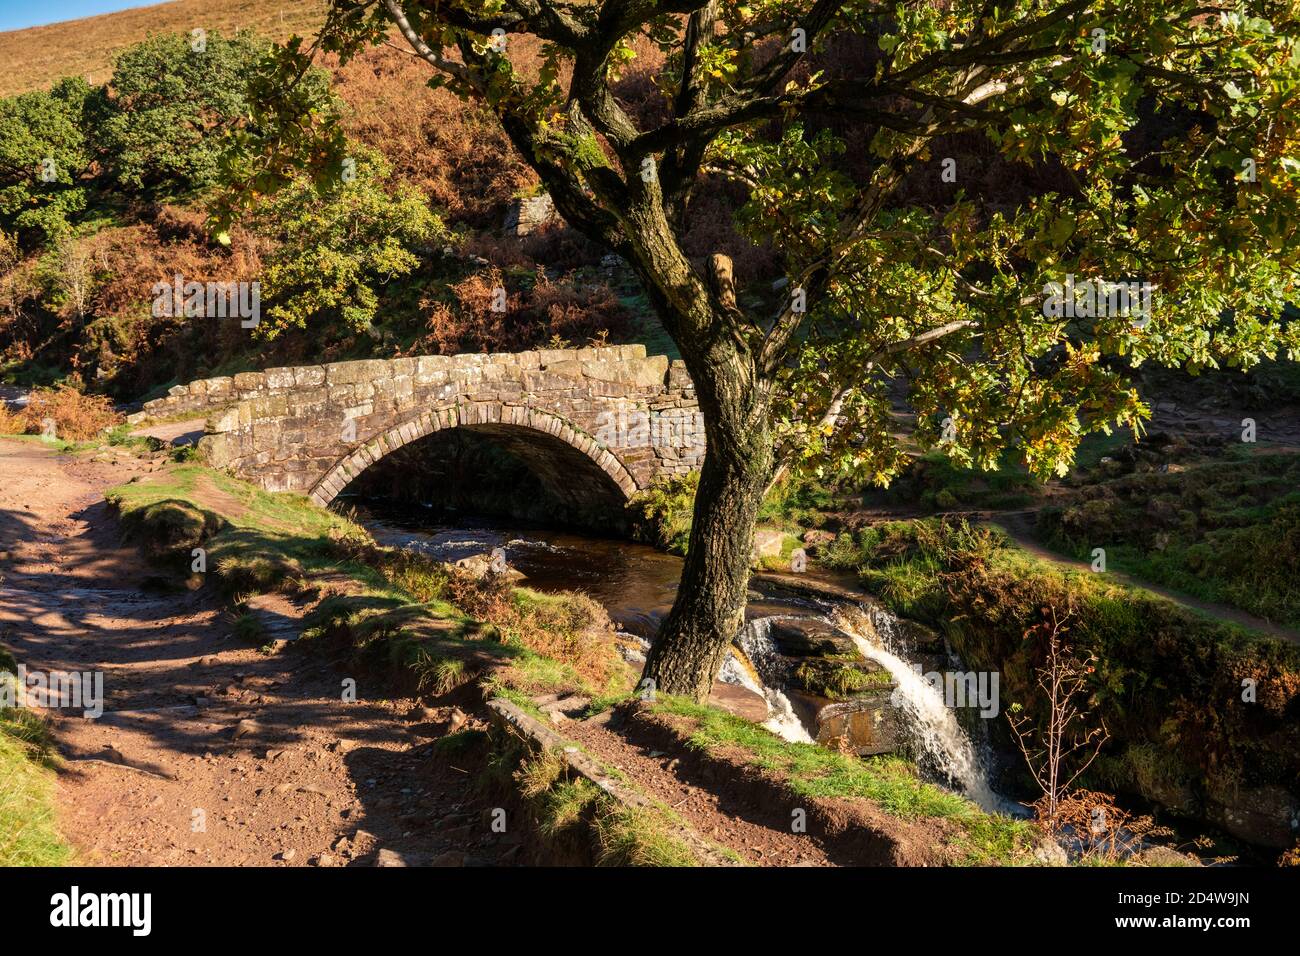 Regno Unito, Inghilterra, Staffordshire, Moorlands, Ax Edge Moor, Three Shires Head vecchio ponte in pietra a cavallo sul fiume Dane Foto Stock